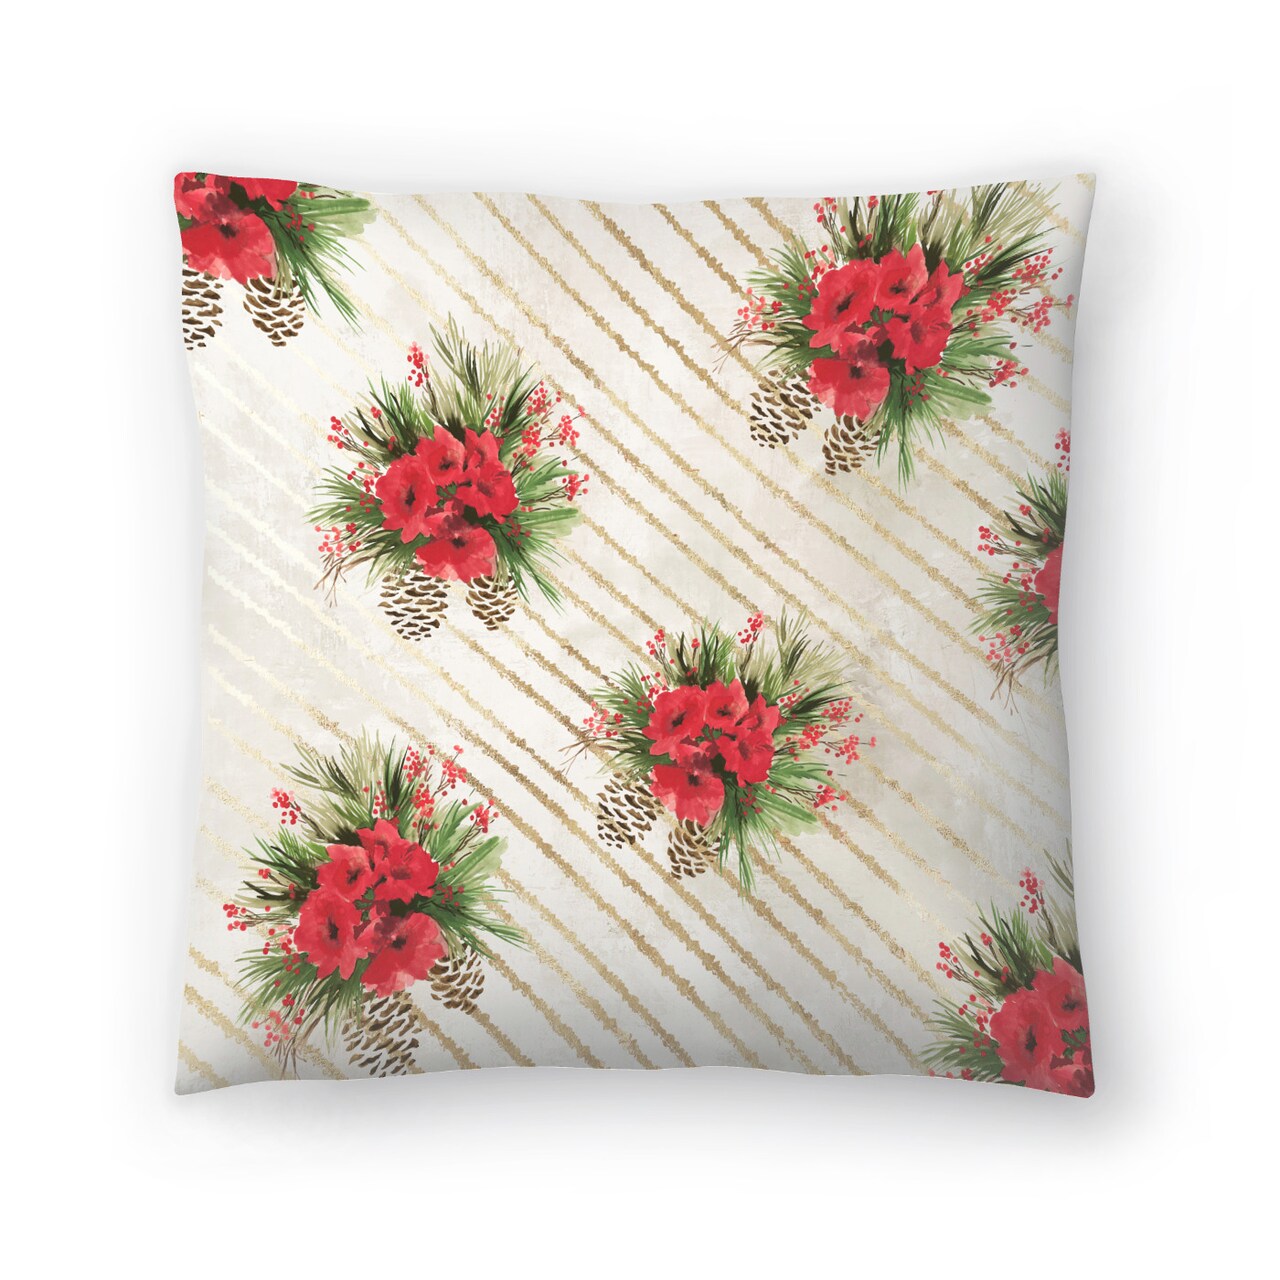 Poinsettia Ornate On White Throw Pillow Americanflat Decorative Pillow